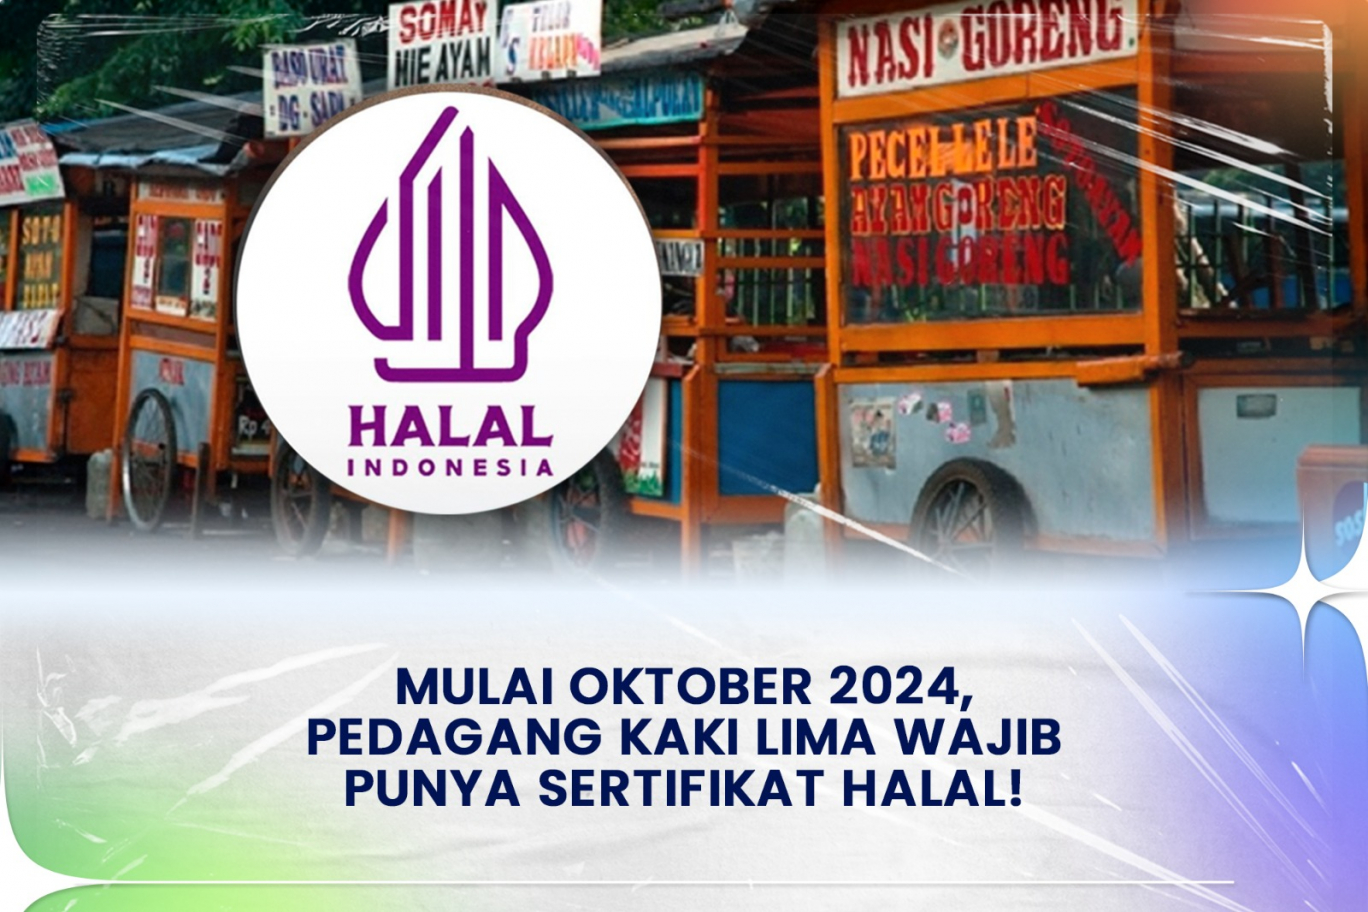 Mulai Oktober 2024, Pedagang Kaki Lima Wajib Punya Sertifikat Halal!